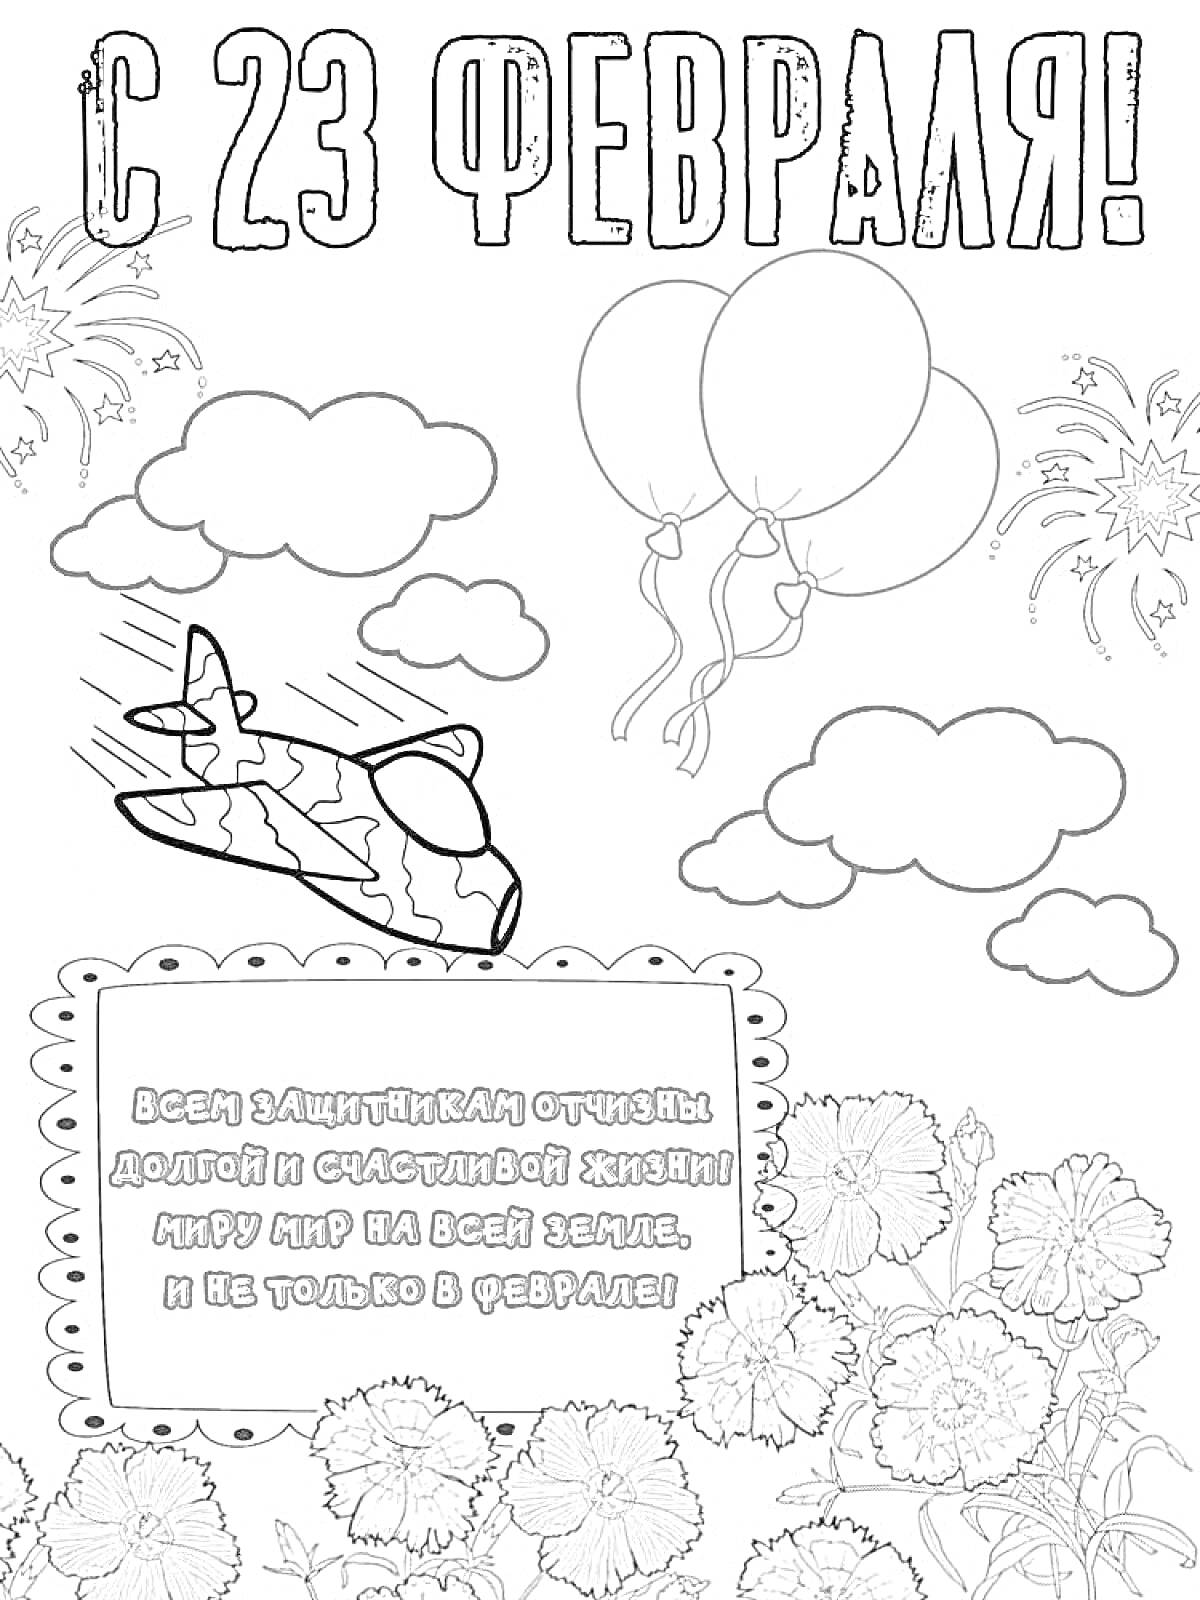 Раскраска С 23 Февраля! Самолет, облака, воздушные шары, салют, цветы, поздравительный стих